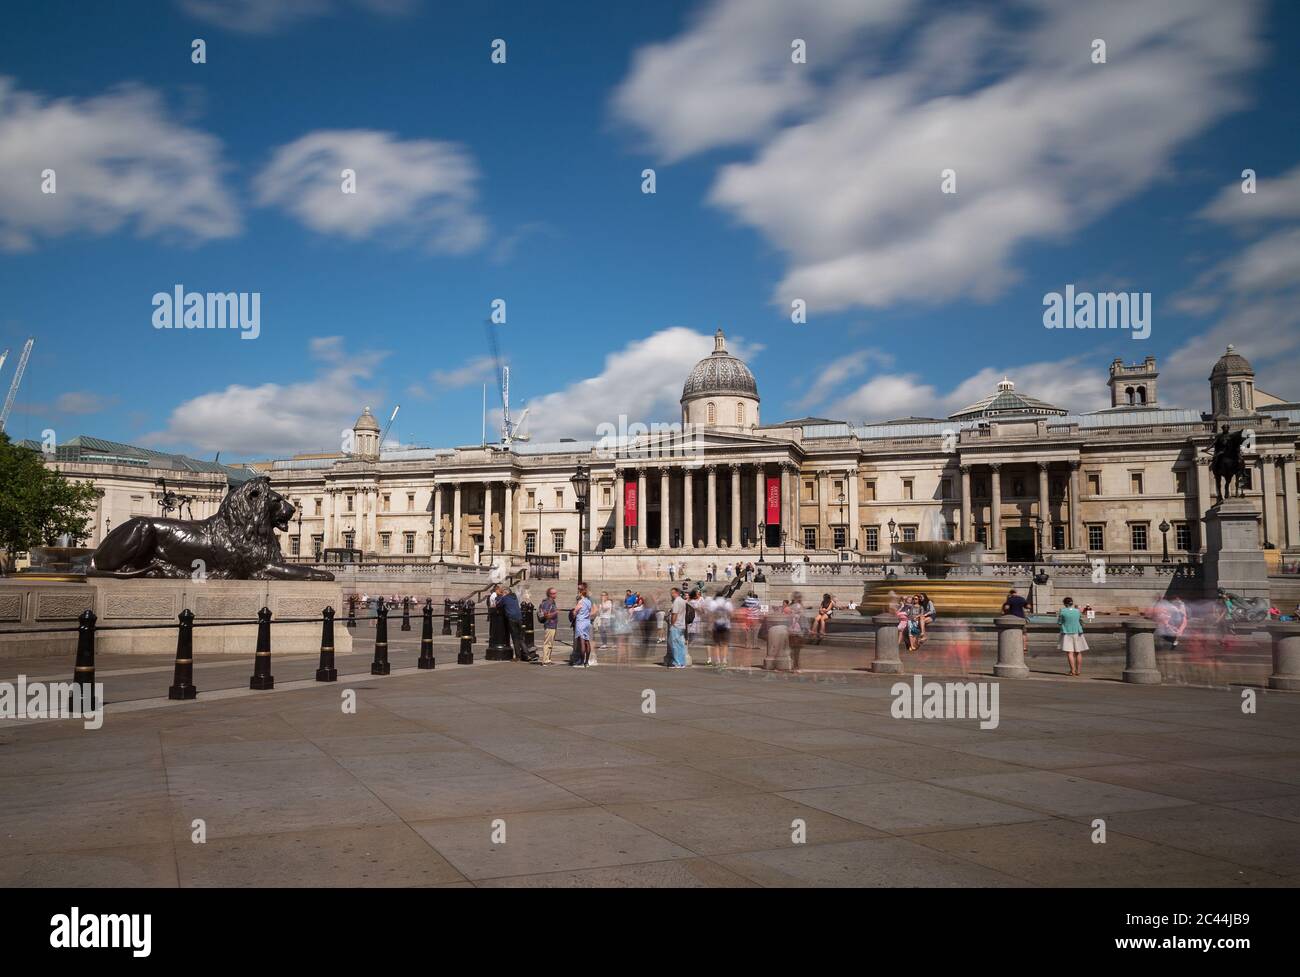 LONDRES, Royaume-Uni - 21 JUILLET 2015 : Trafalgar Square et la National Gallery de Londres pendant la journée. Le flou des gens peut être vu à l'extérieur. Banque D'Images